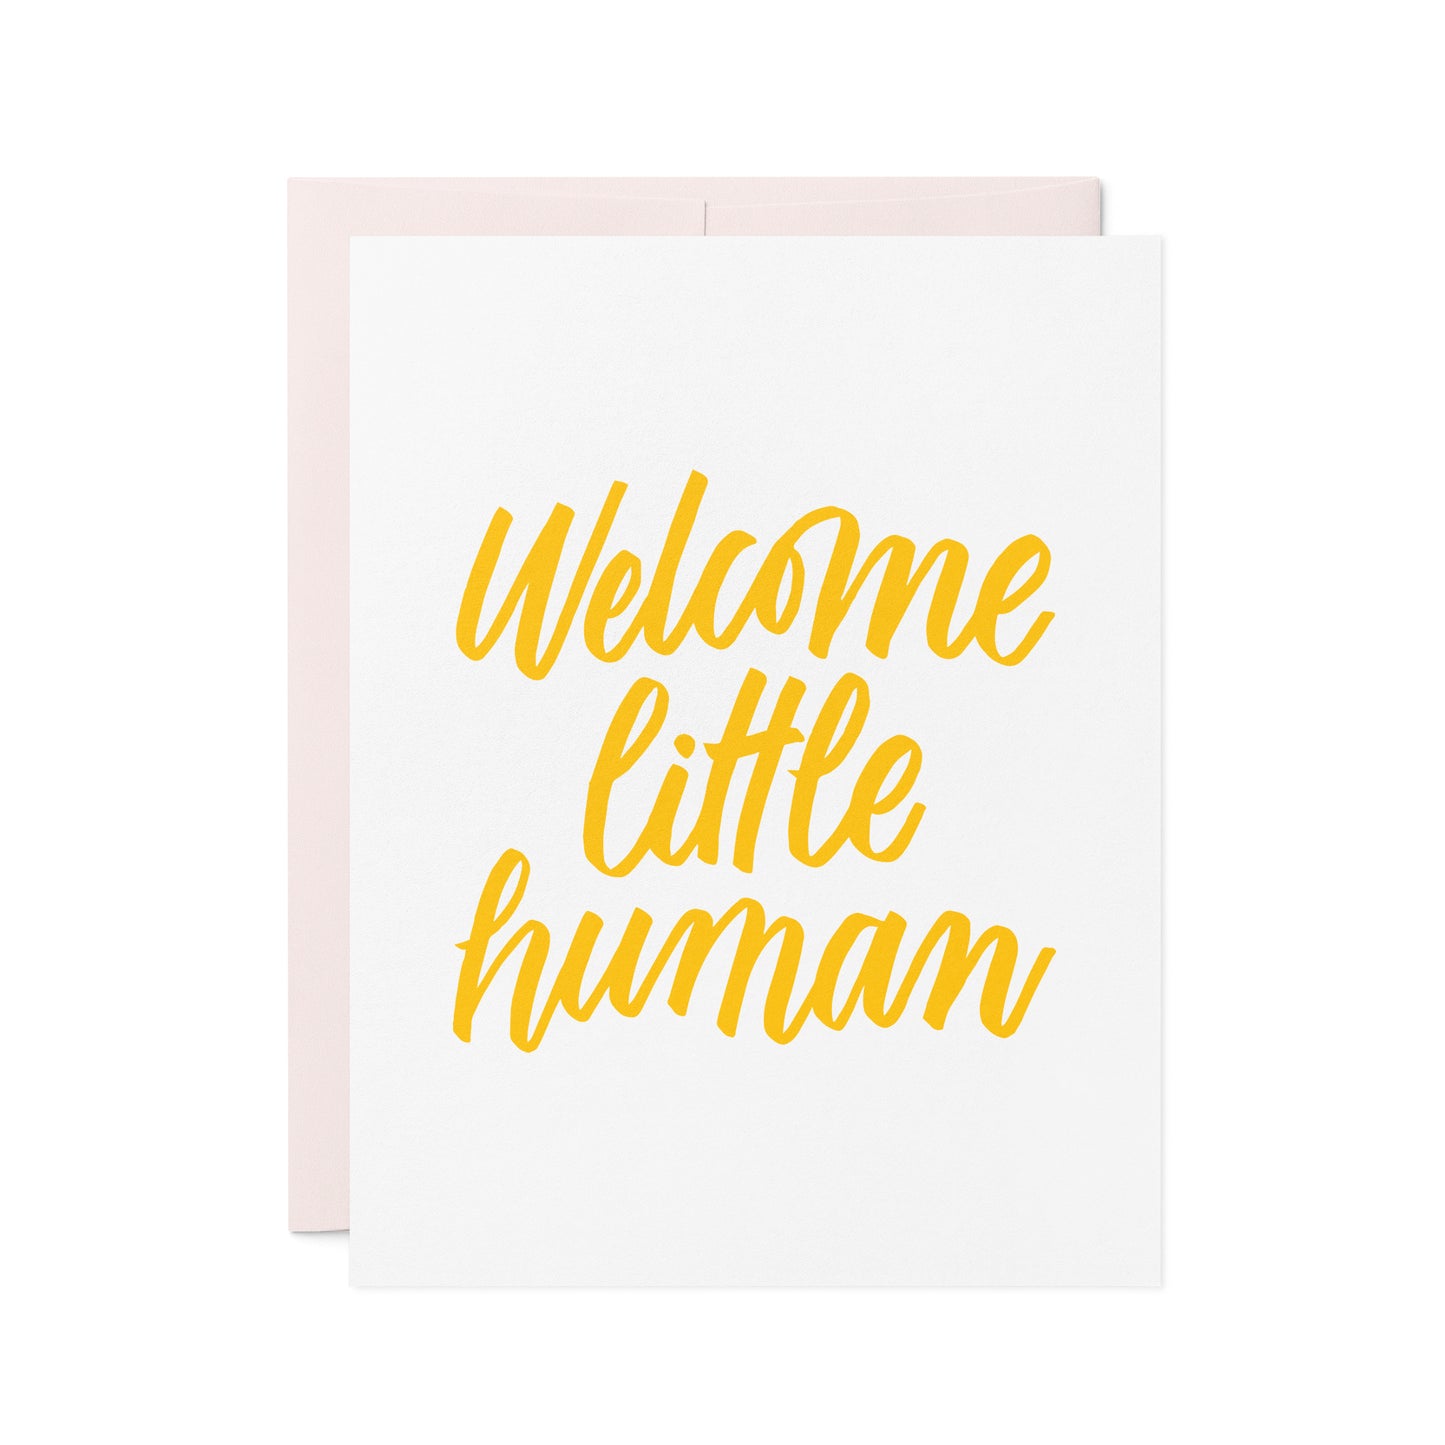 Little Human